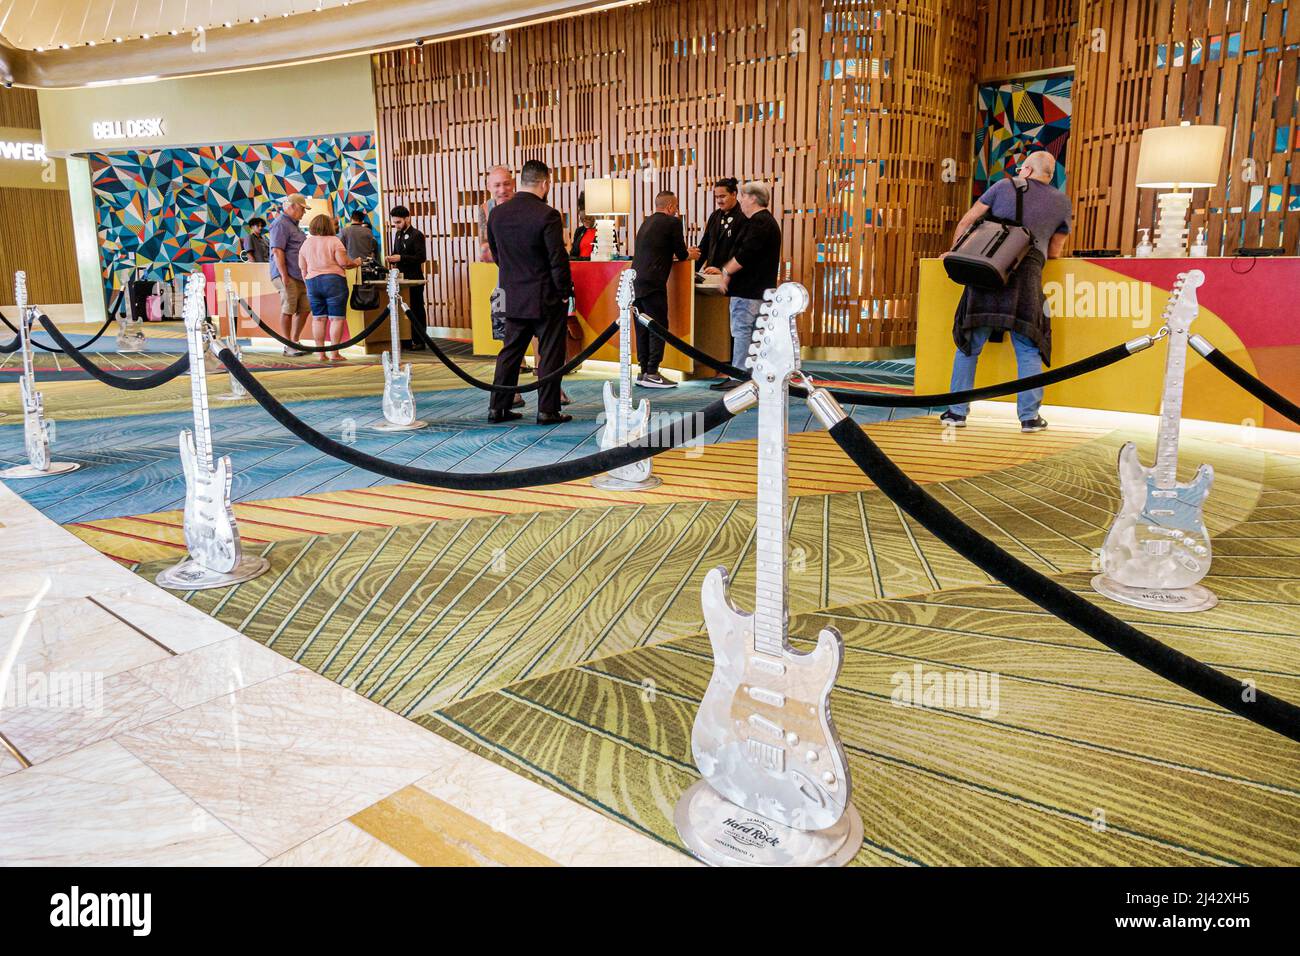 Hollywood Florida Seminole Hard Rock Hotel & Casino Tribal réservation à l'intérieur du hall d'entrée réception réception les clients s'y vérifient Banque D'Images